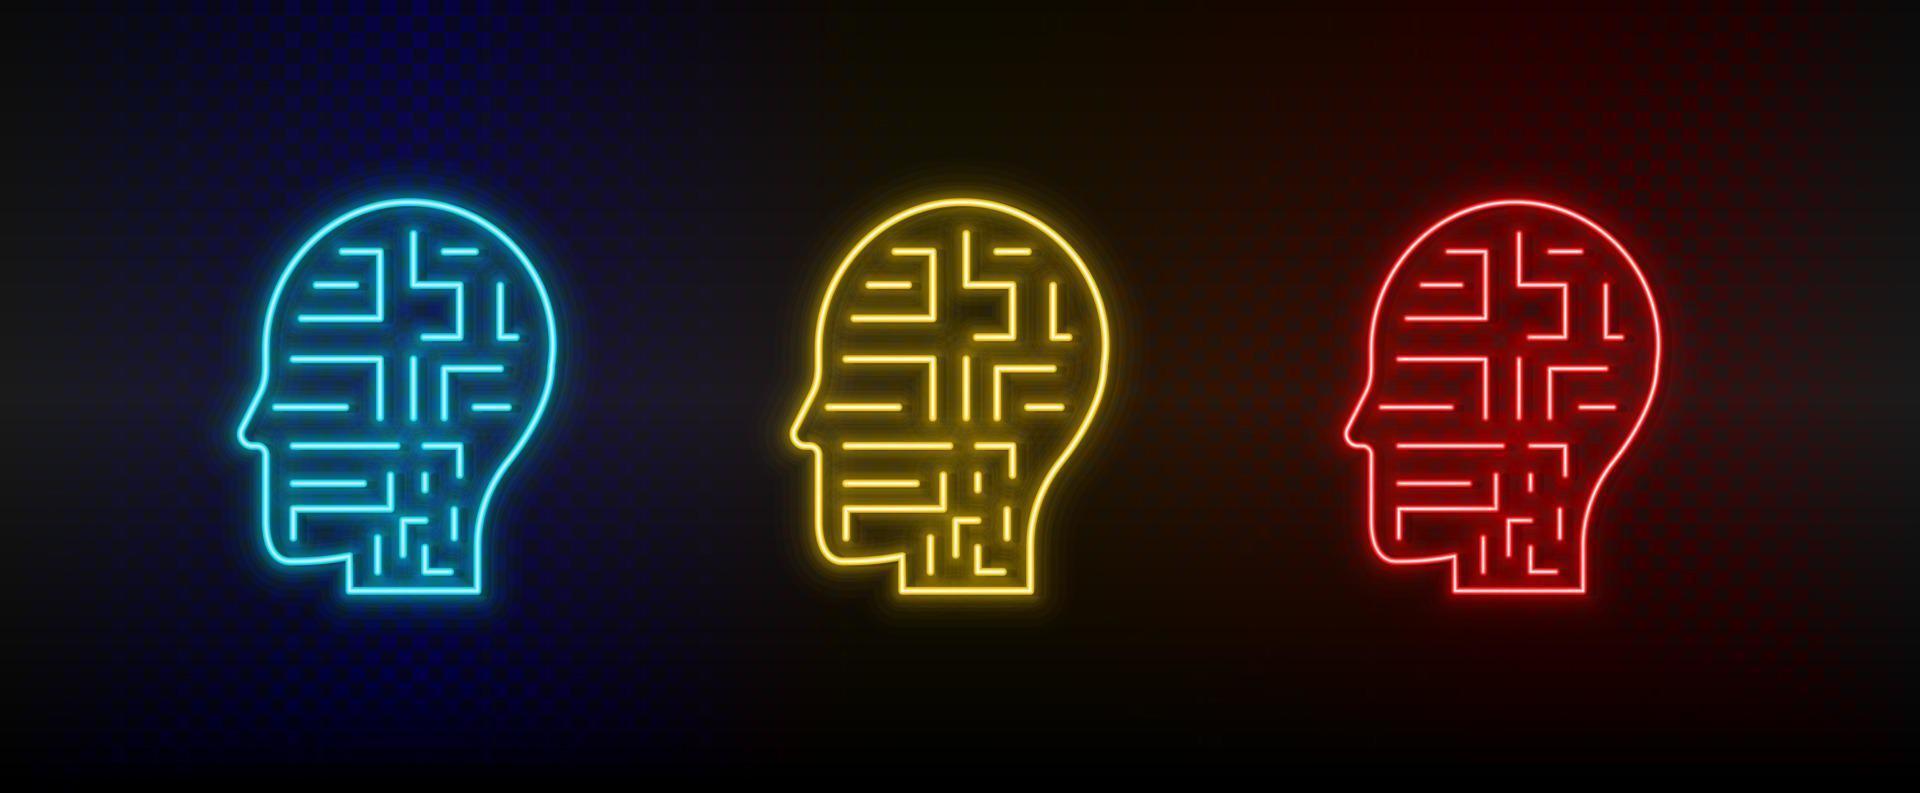 Neon-Symbole. Mechanismus Roboter Mann. Satz von roten, blauen, gelben Neonvektorsymbolen auf dunklem Hintergrund vektor